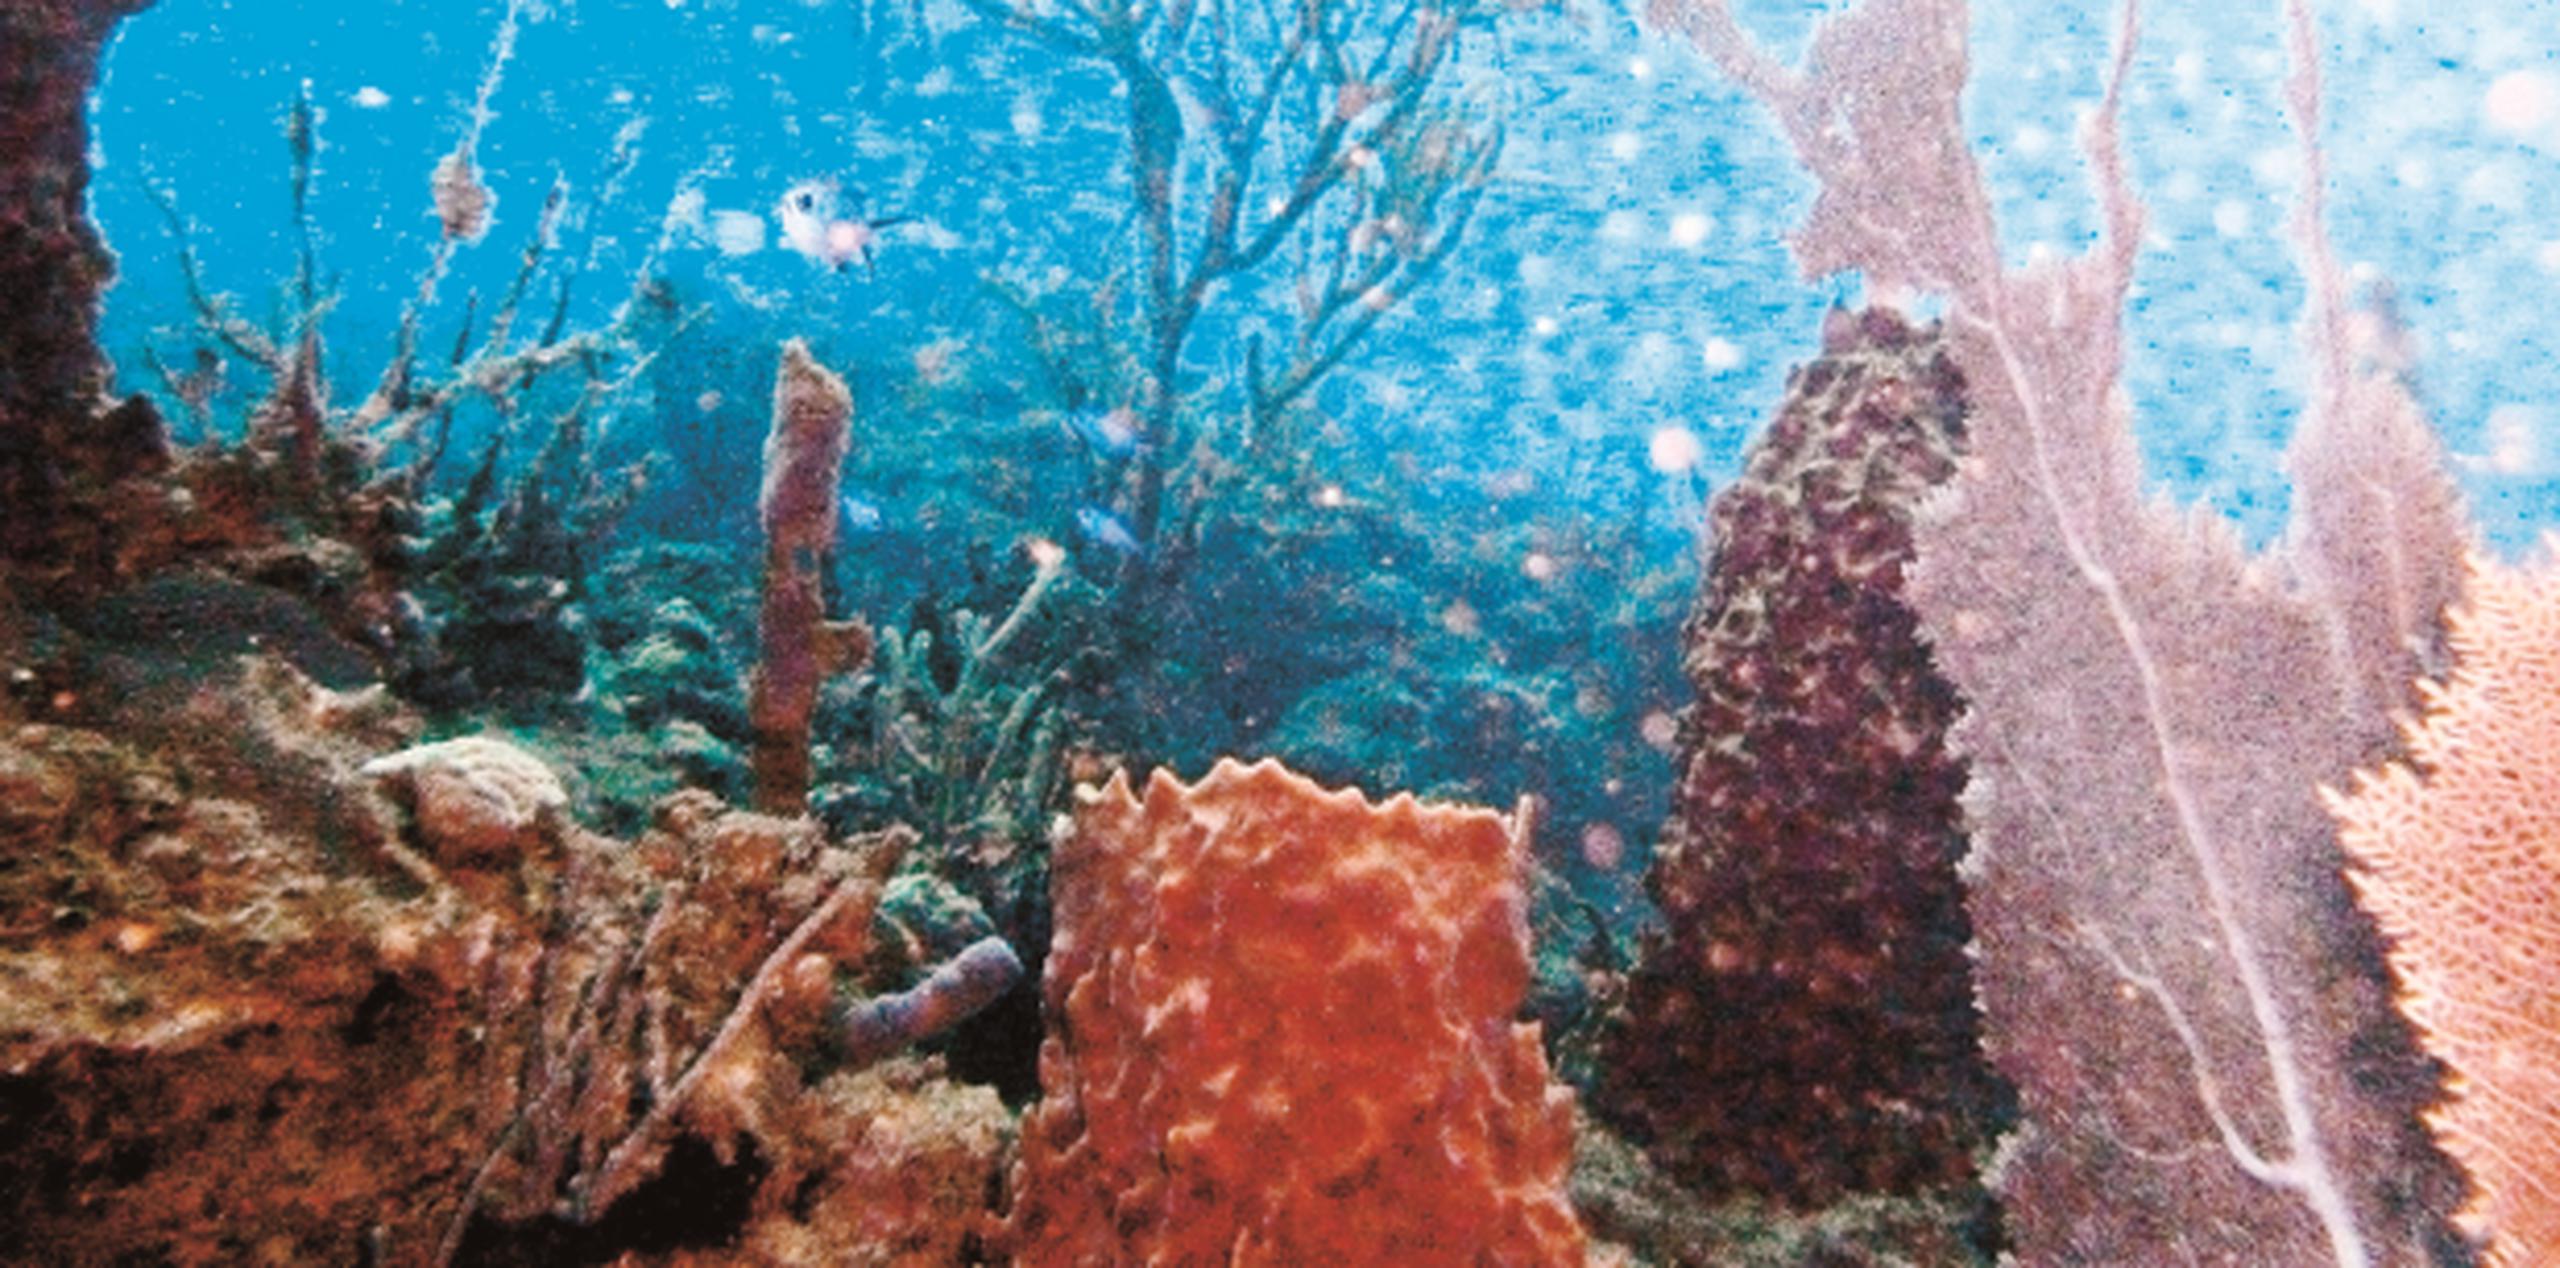 Luego del paso de Irma, las labores de reparación en las llamadas "selvas del mar" se concentraron en pegar 5,000 fragmentos de arrecifes vivos que fueron afectados. (Archivo)